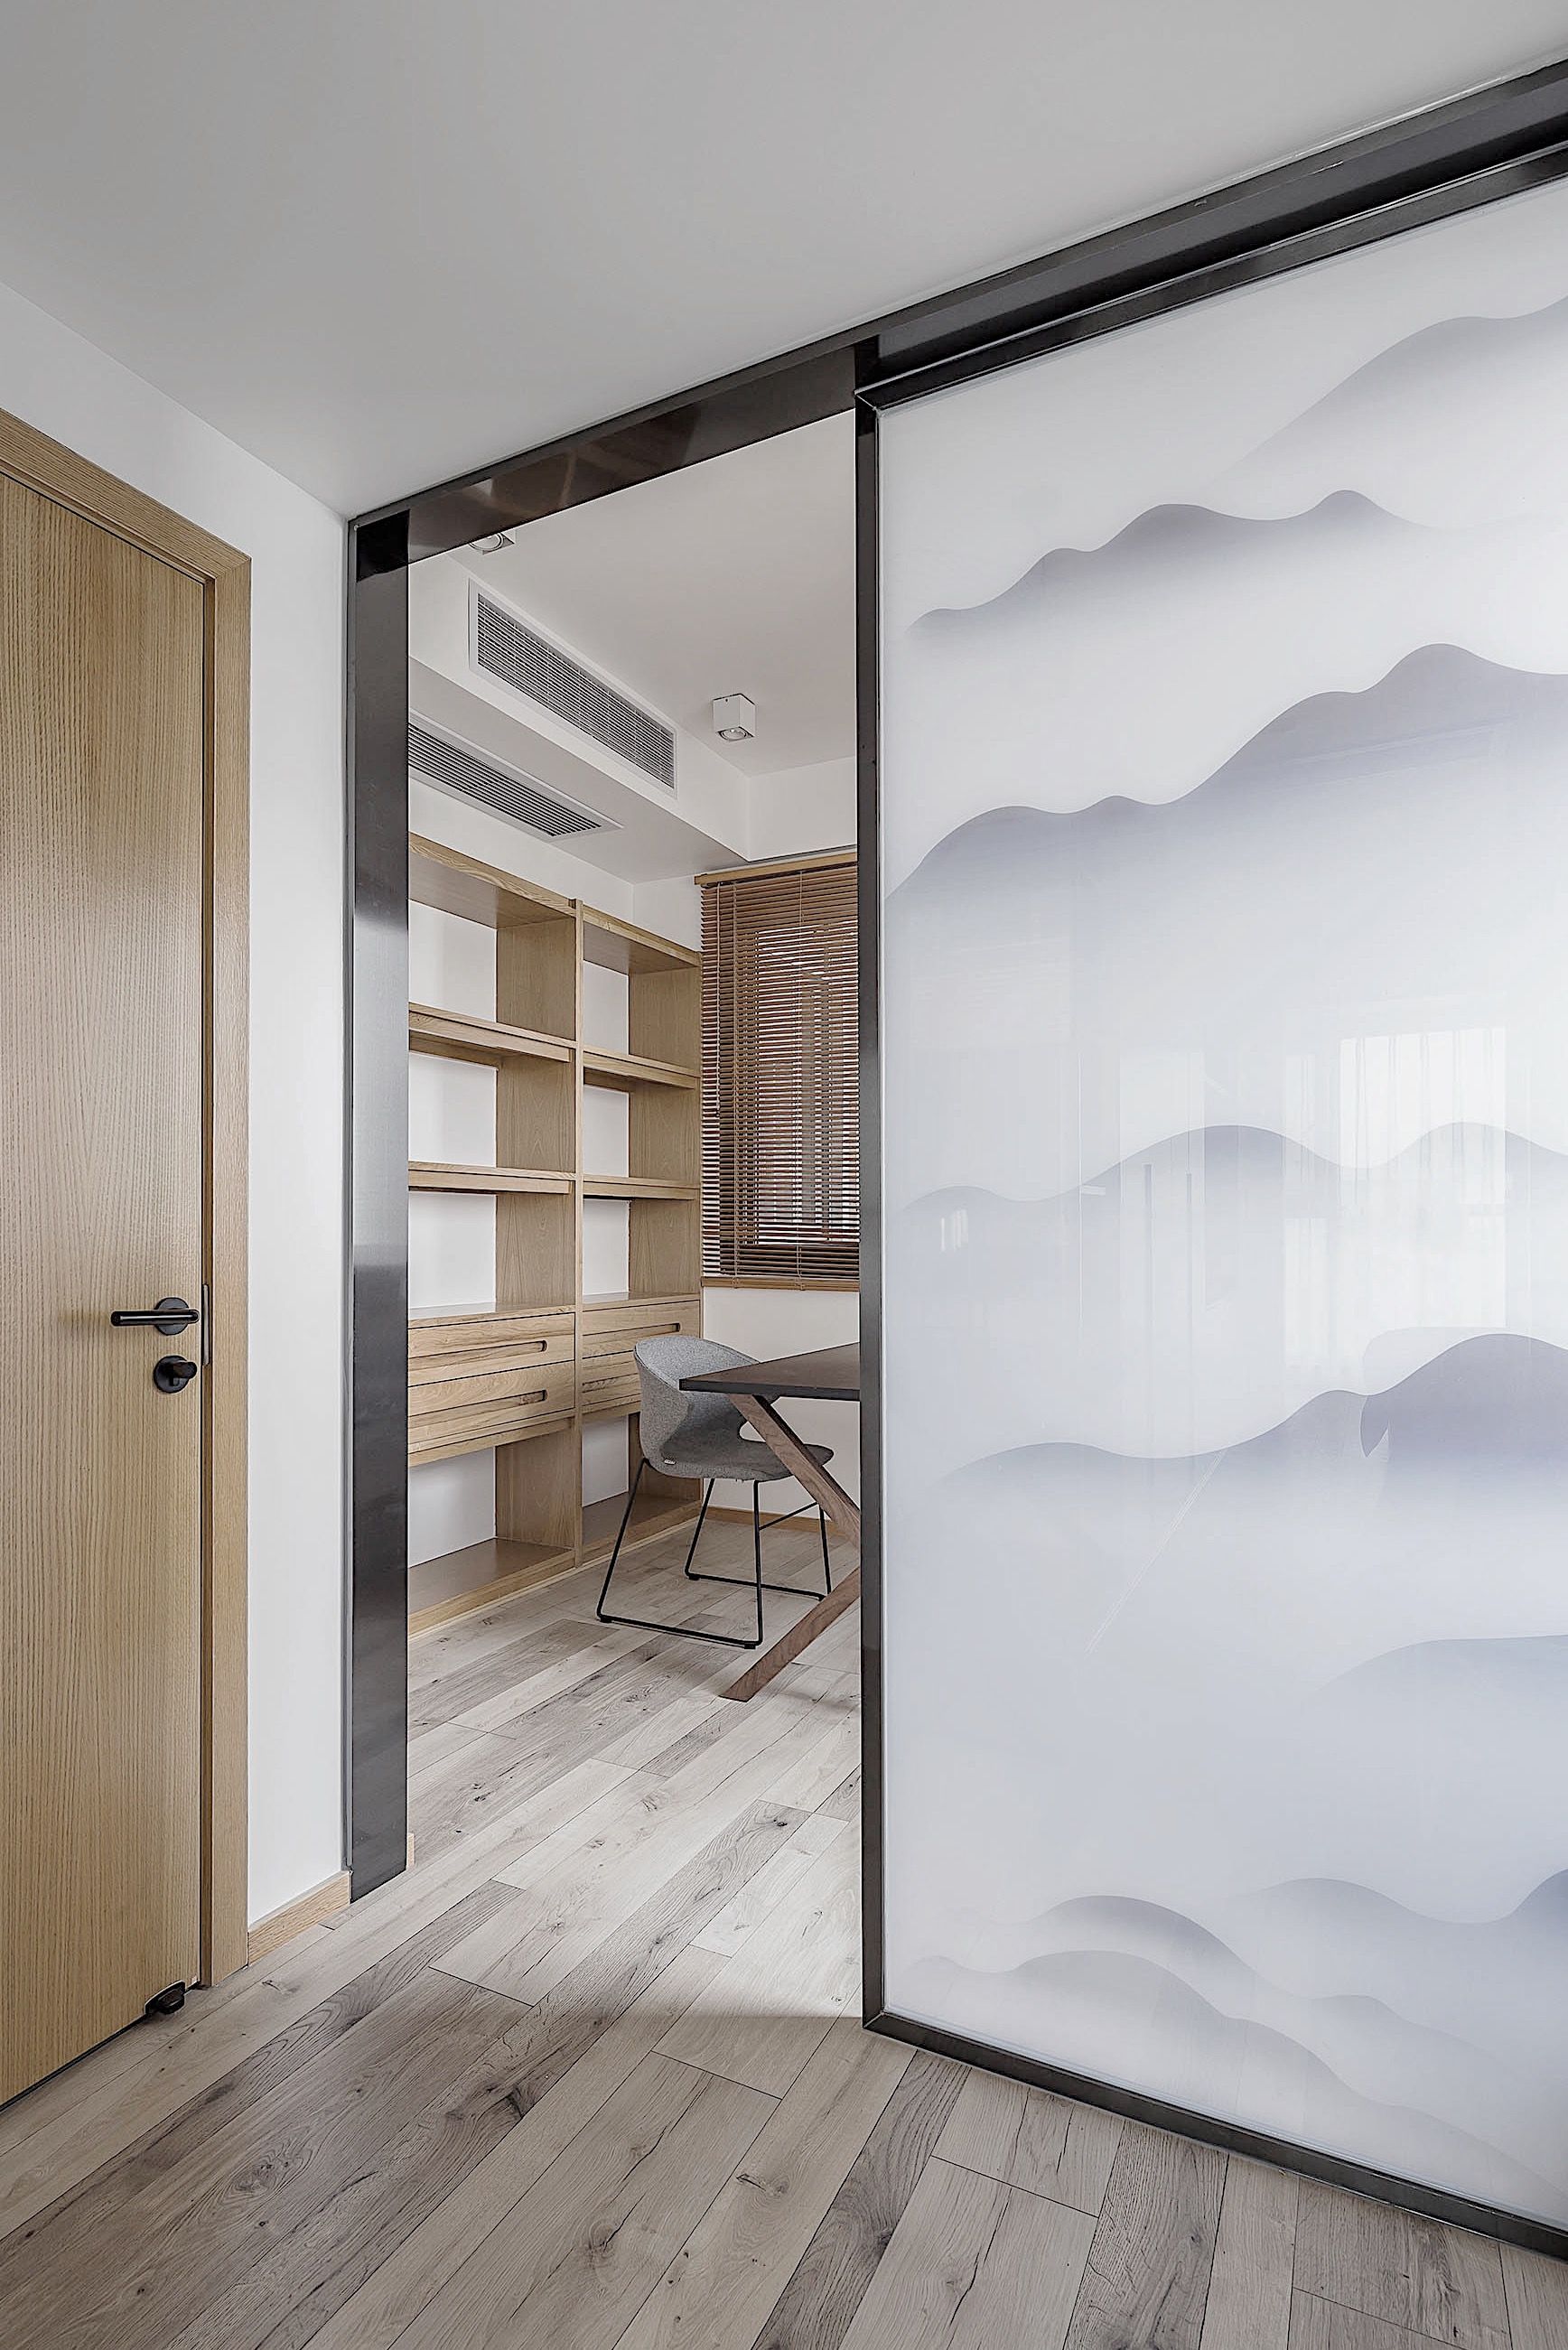 郑州专业装饰设计公司分享的舒适宜居逅筑空间